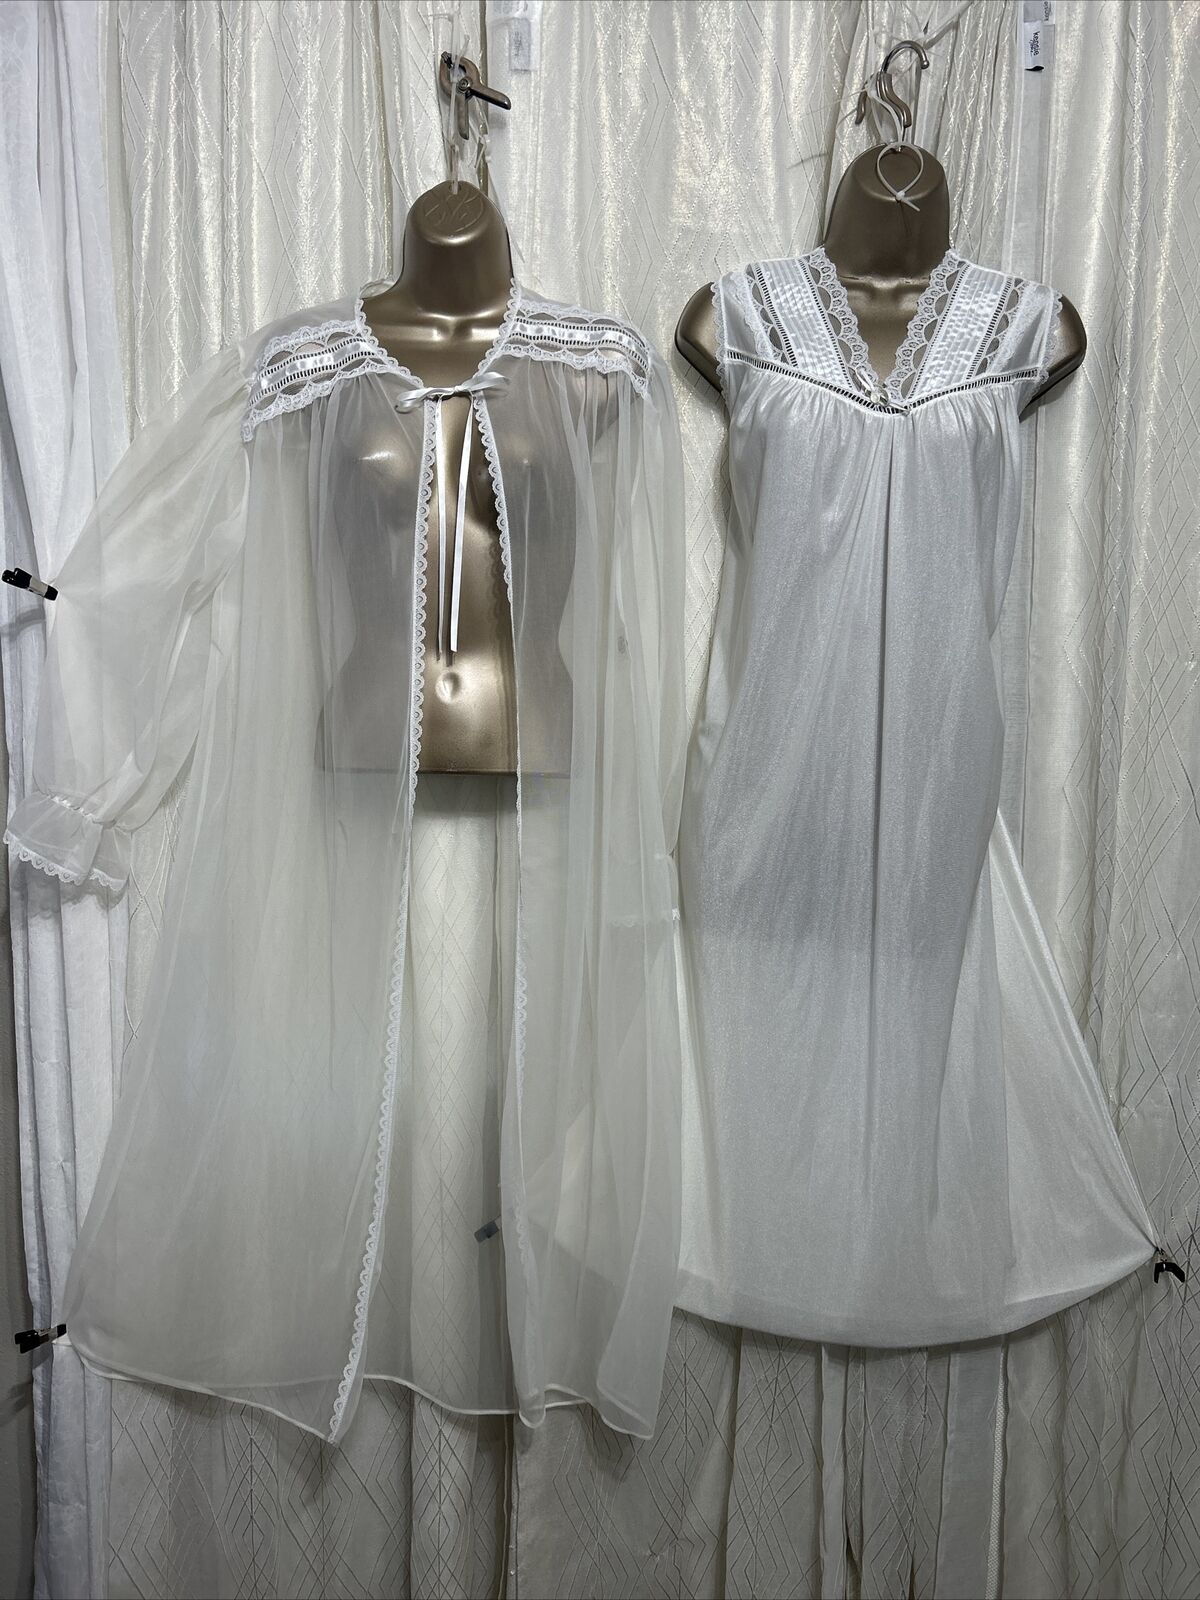 VTG L XL Bridal White Sheer Chiffon Nightgown Pei… - image 1